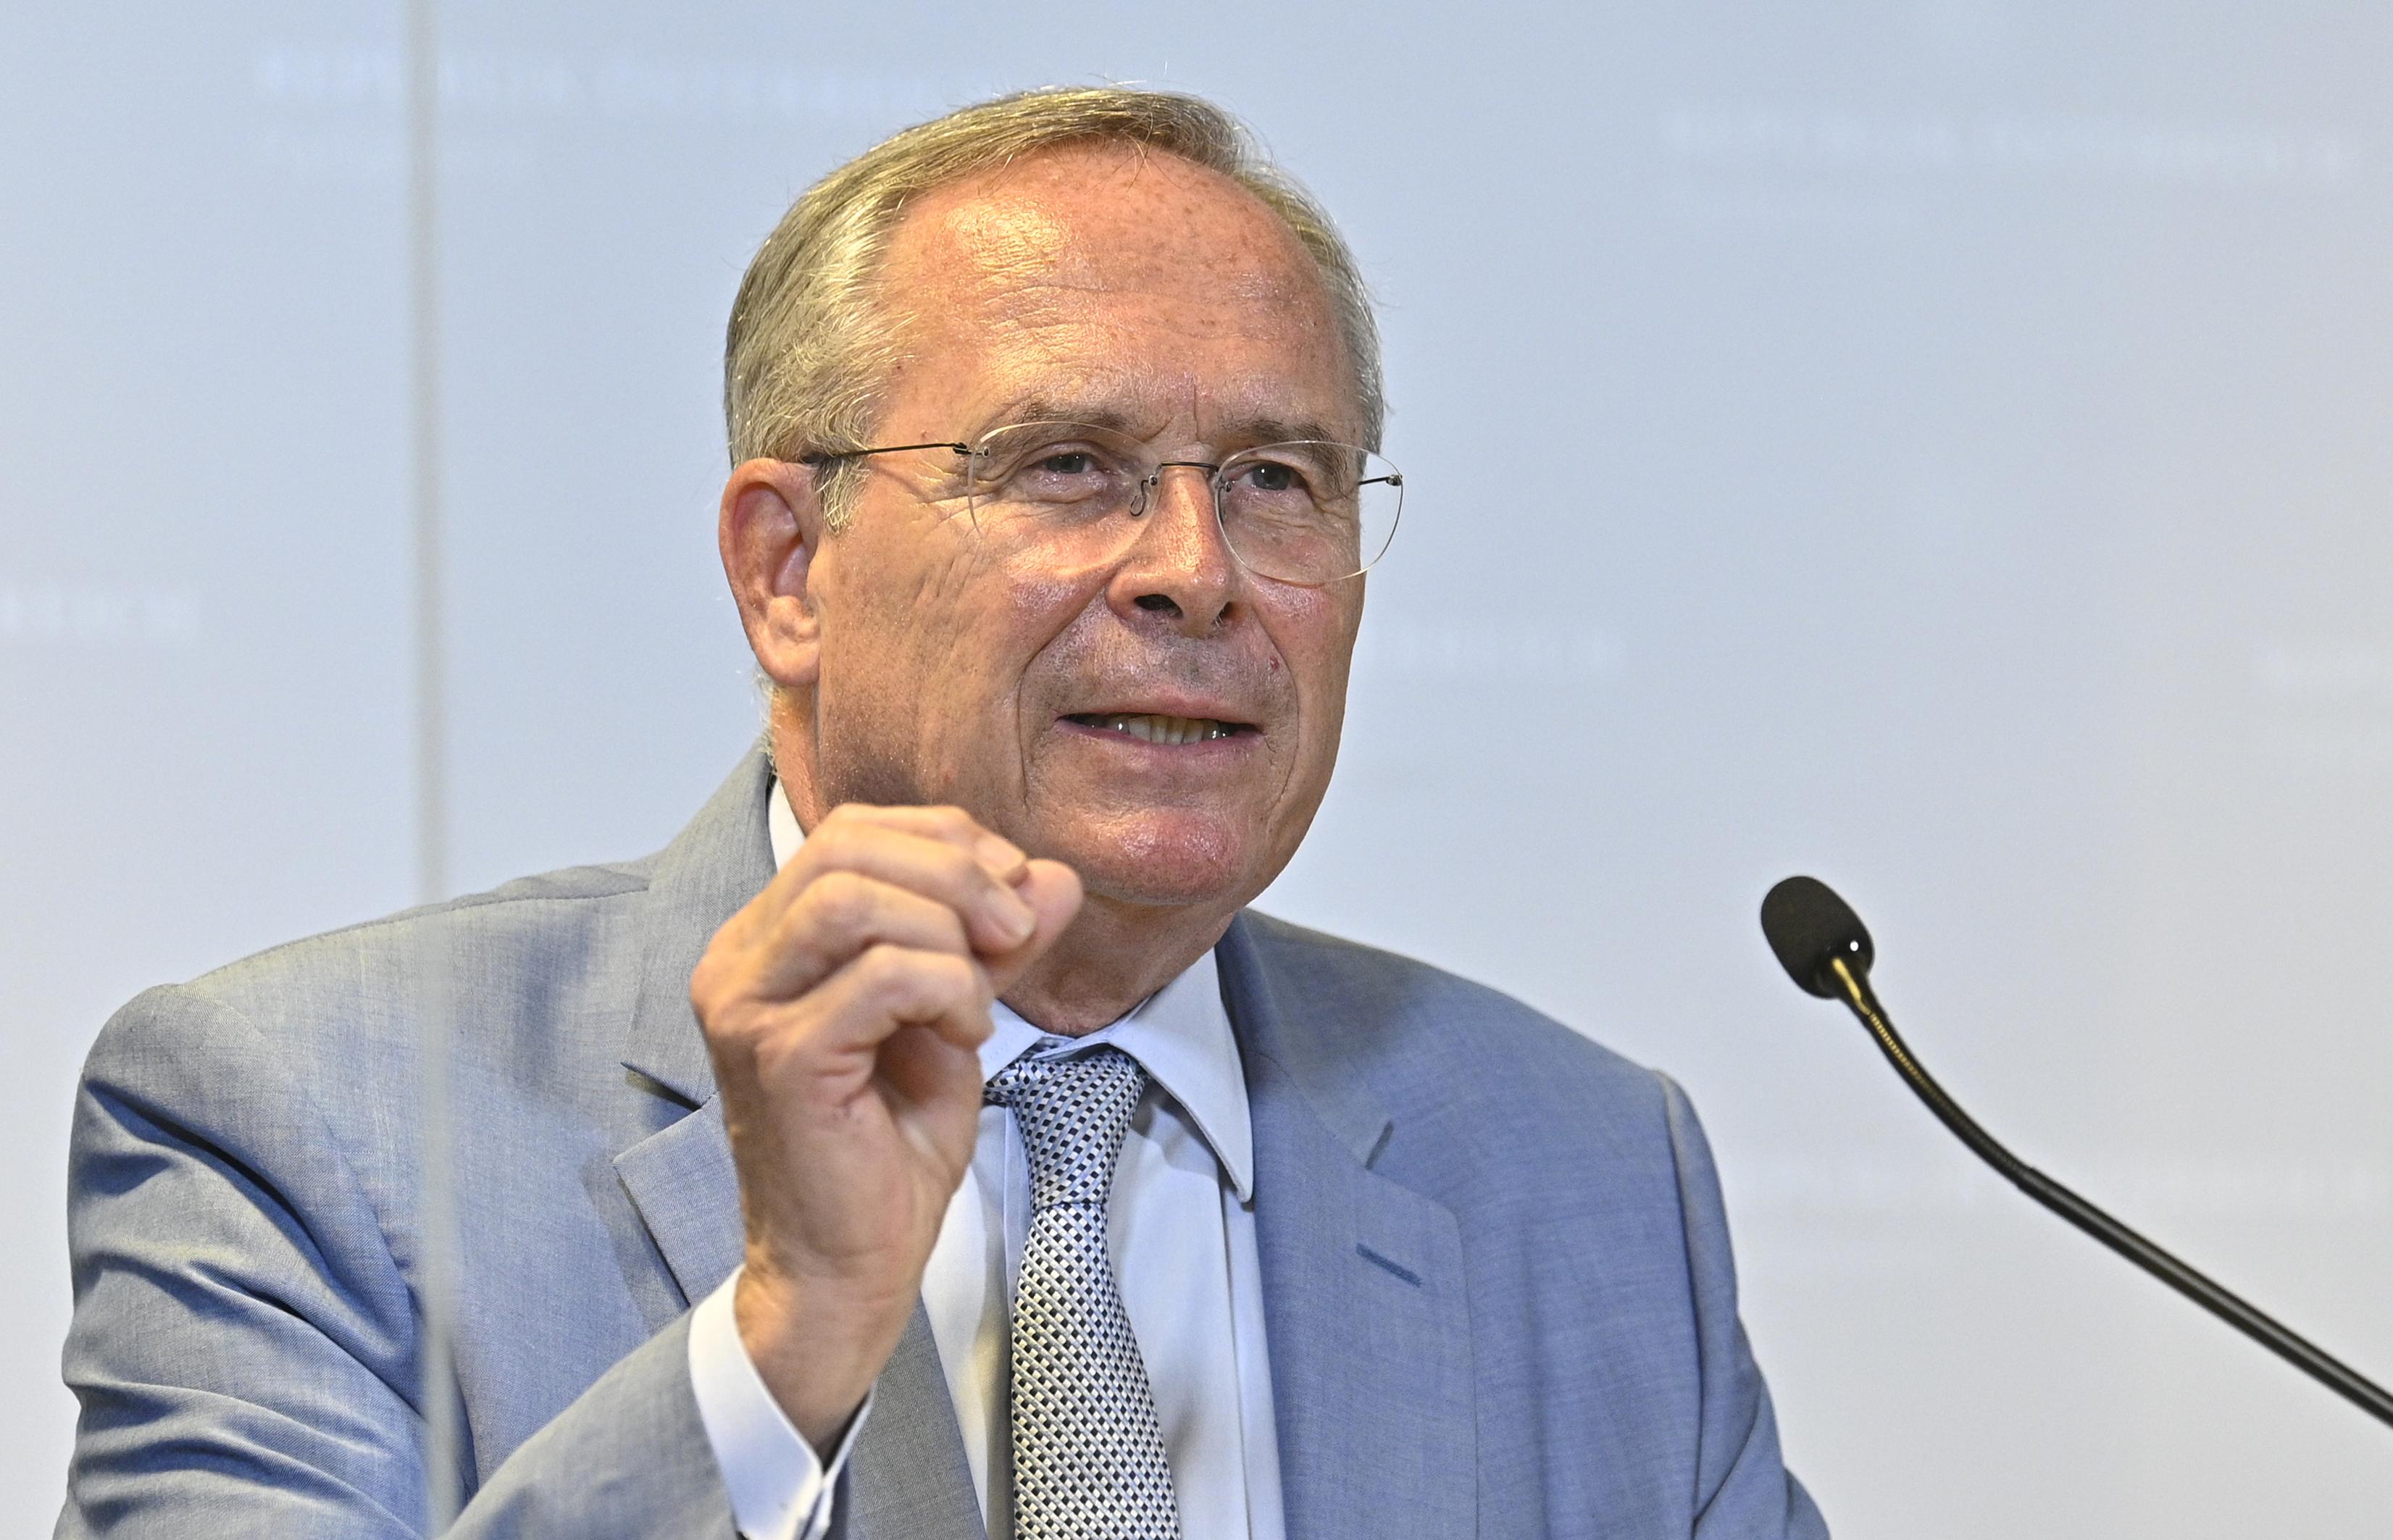 ÖVP Wien: So baut Karl Mahrer die Parteispitze um